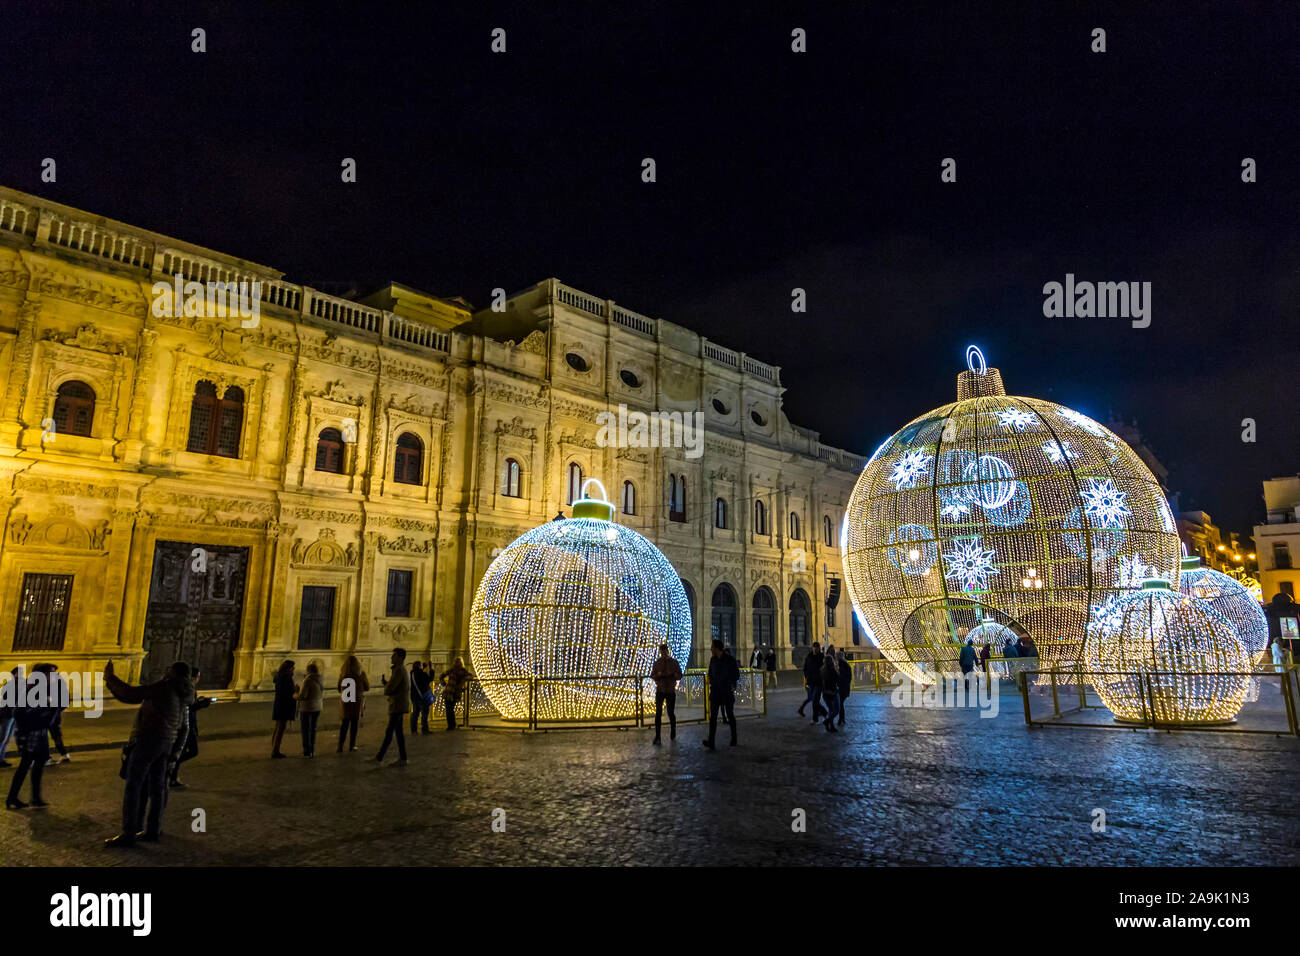 Siviglia, Spagna - 14 dicembre 2017: la gente cammina vicino al illuminato decorazioni di Natale su San Francisco Square nel centro della città di Siviglia, Spagna Foto Stock